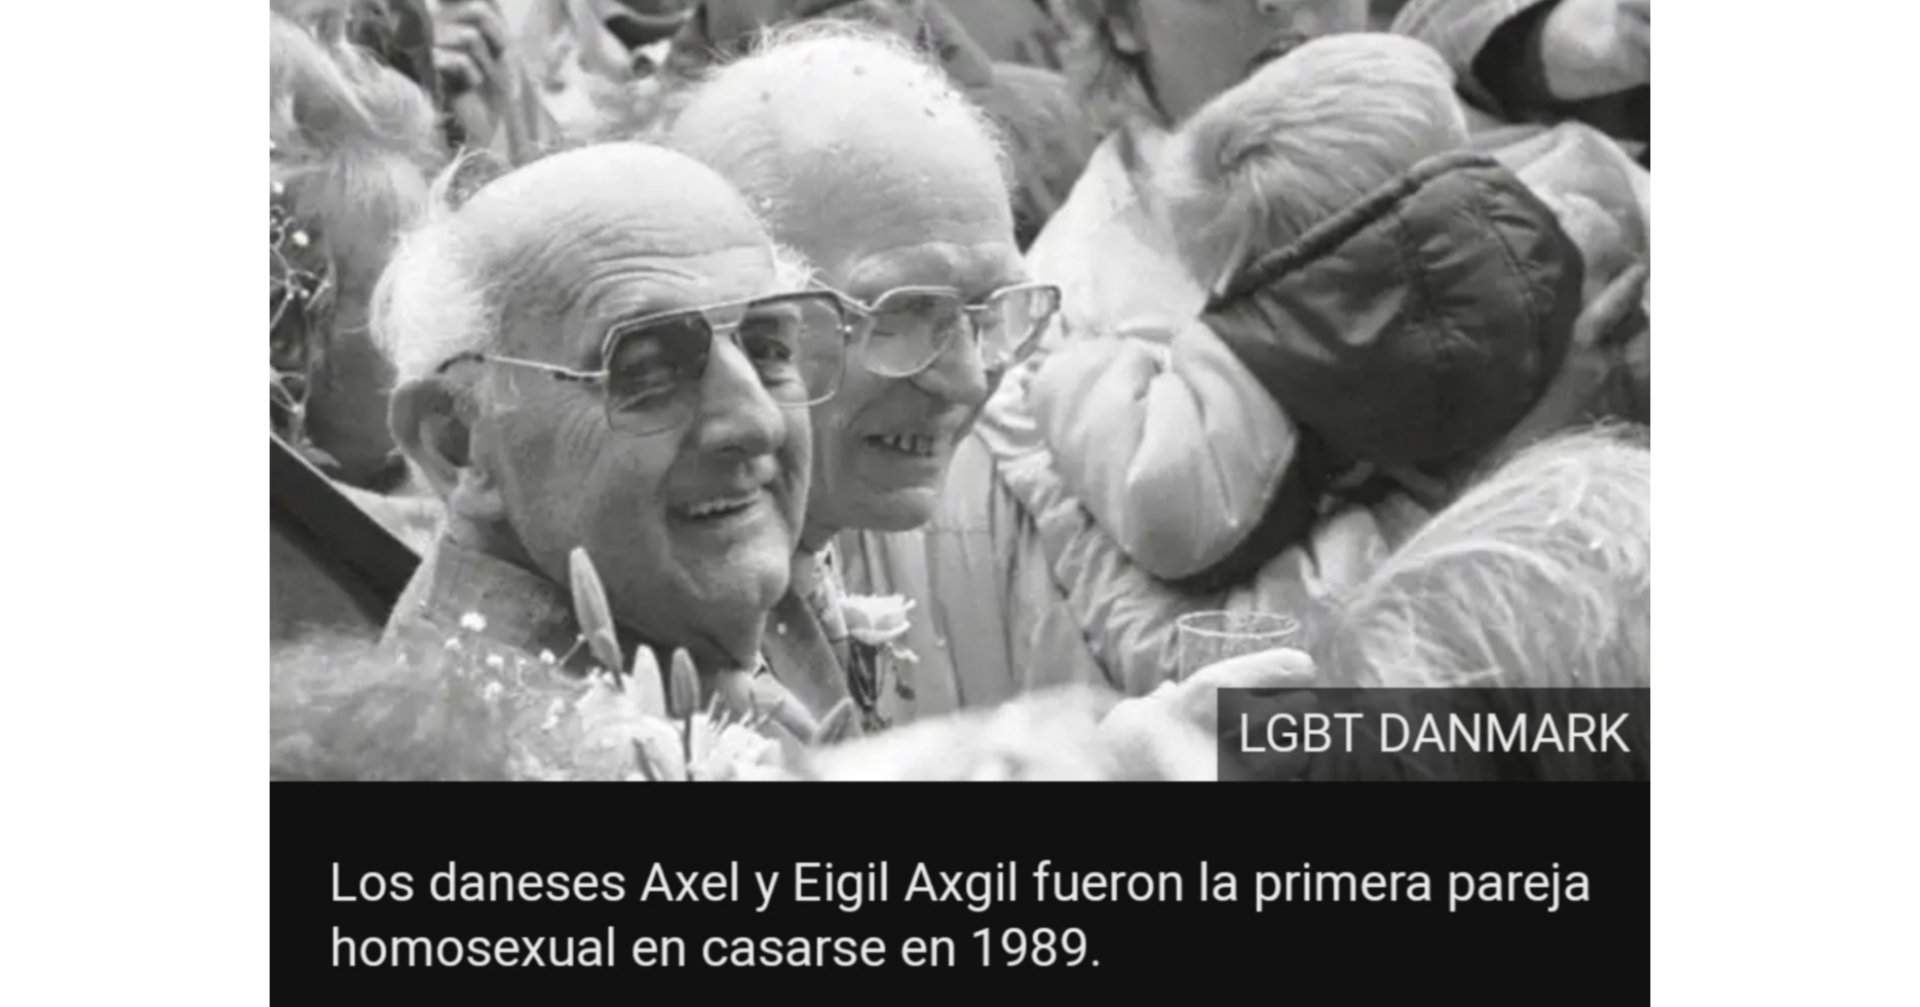 La Historia De Amor Y Activismo De La Primera Pareja Gay Legalmente 6184